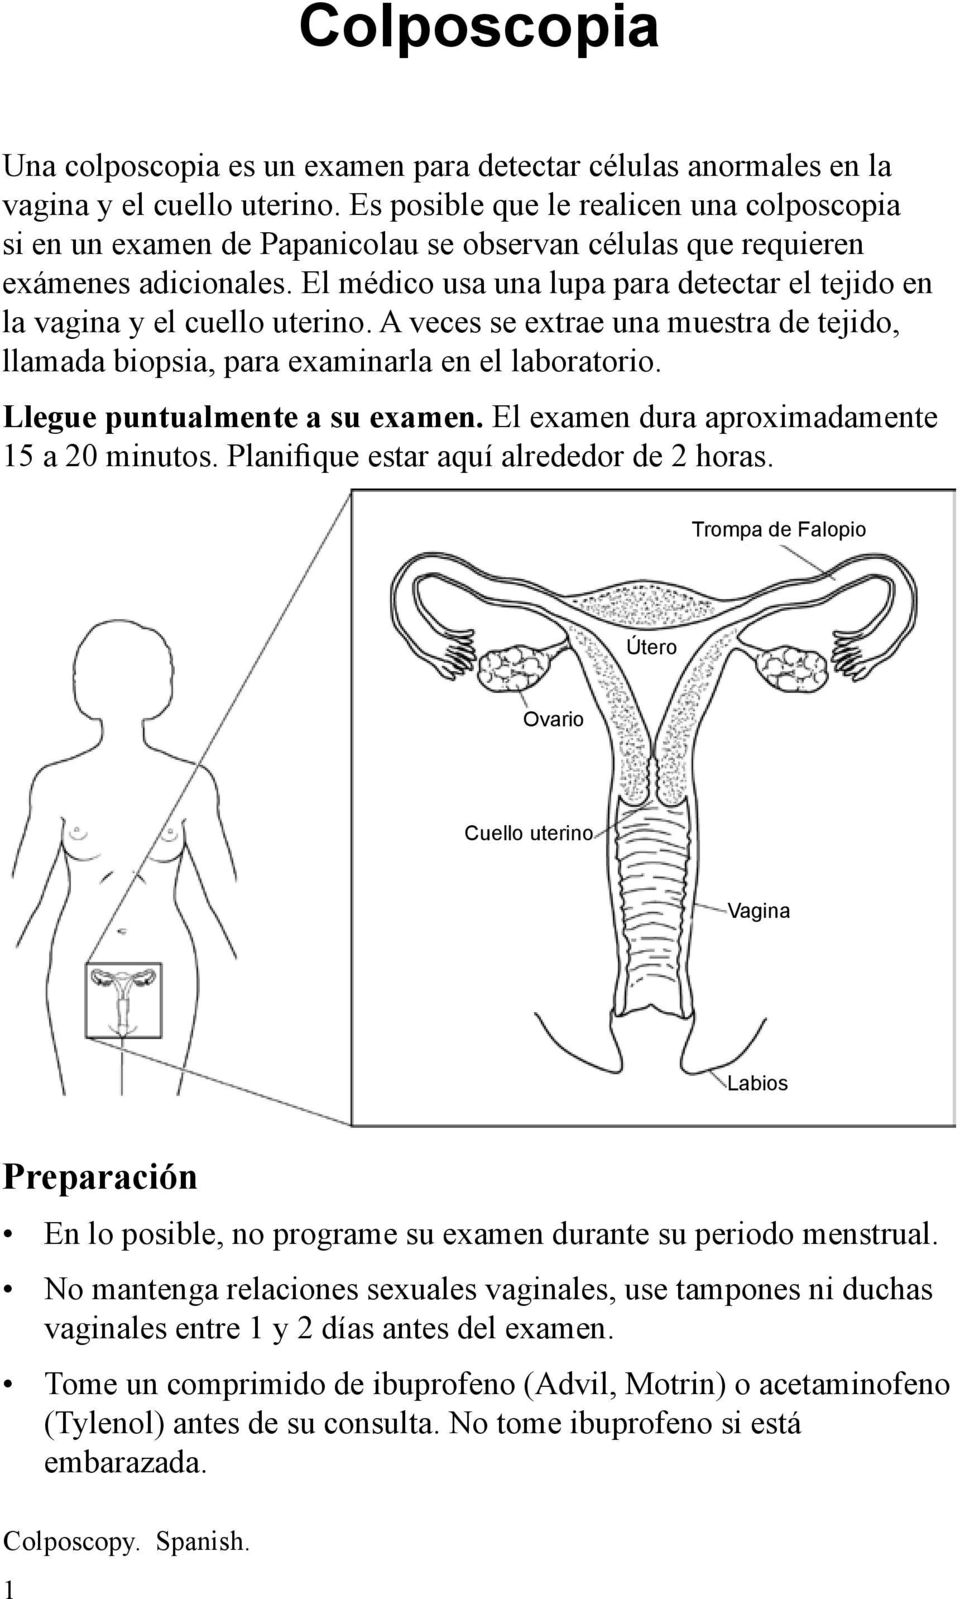 El médico usa una lupa para detectar el tejido en la vagina y el cuello uterino. A veces se extrae una muestra de tejido, llamada biopsia, para examinarla en el laboratorio.